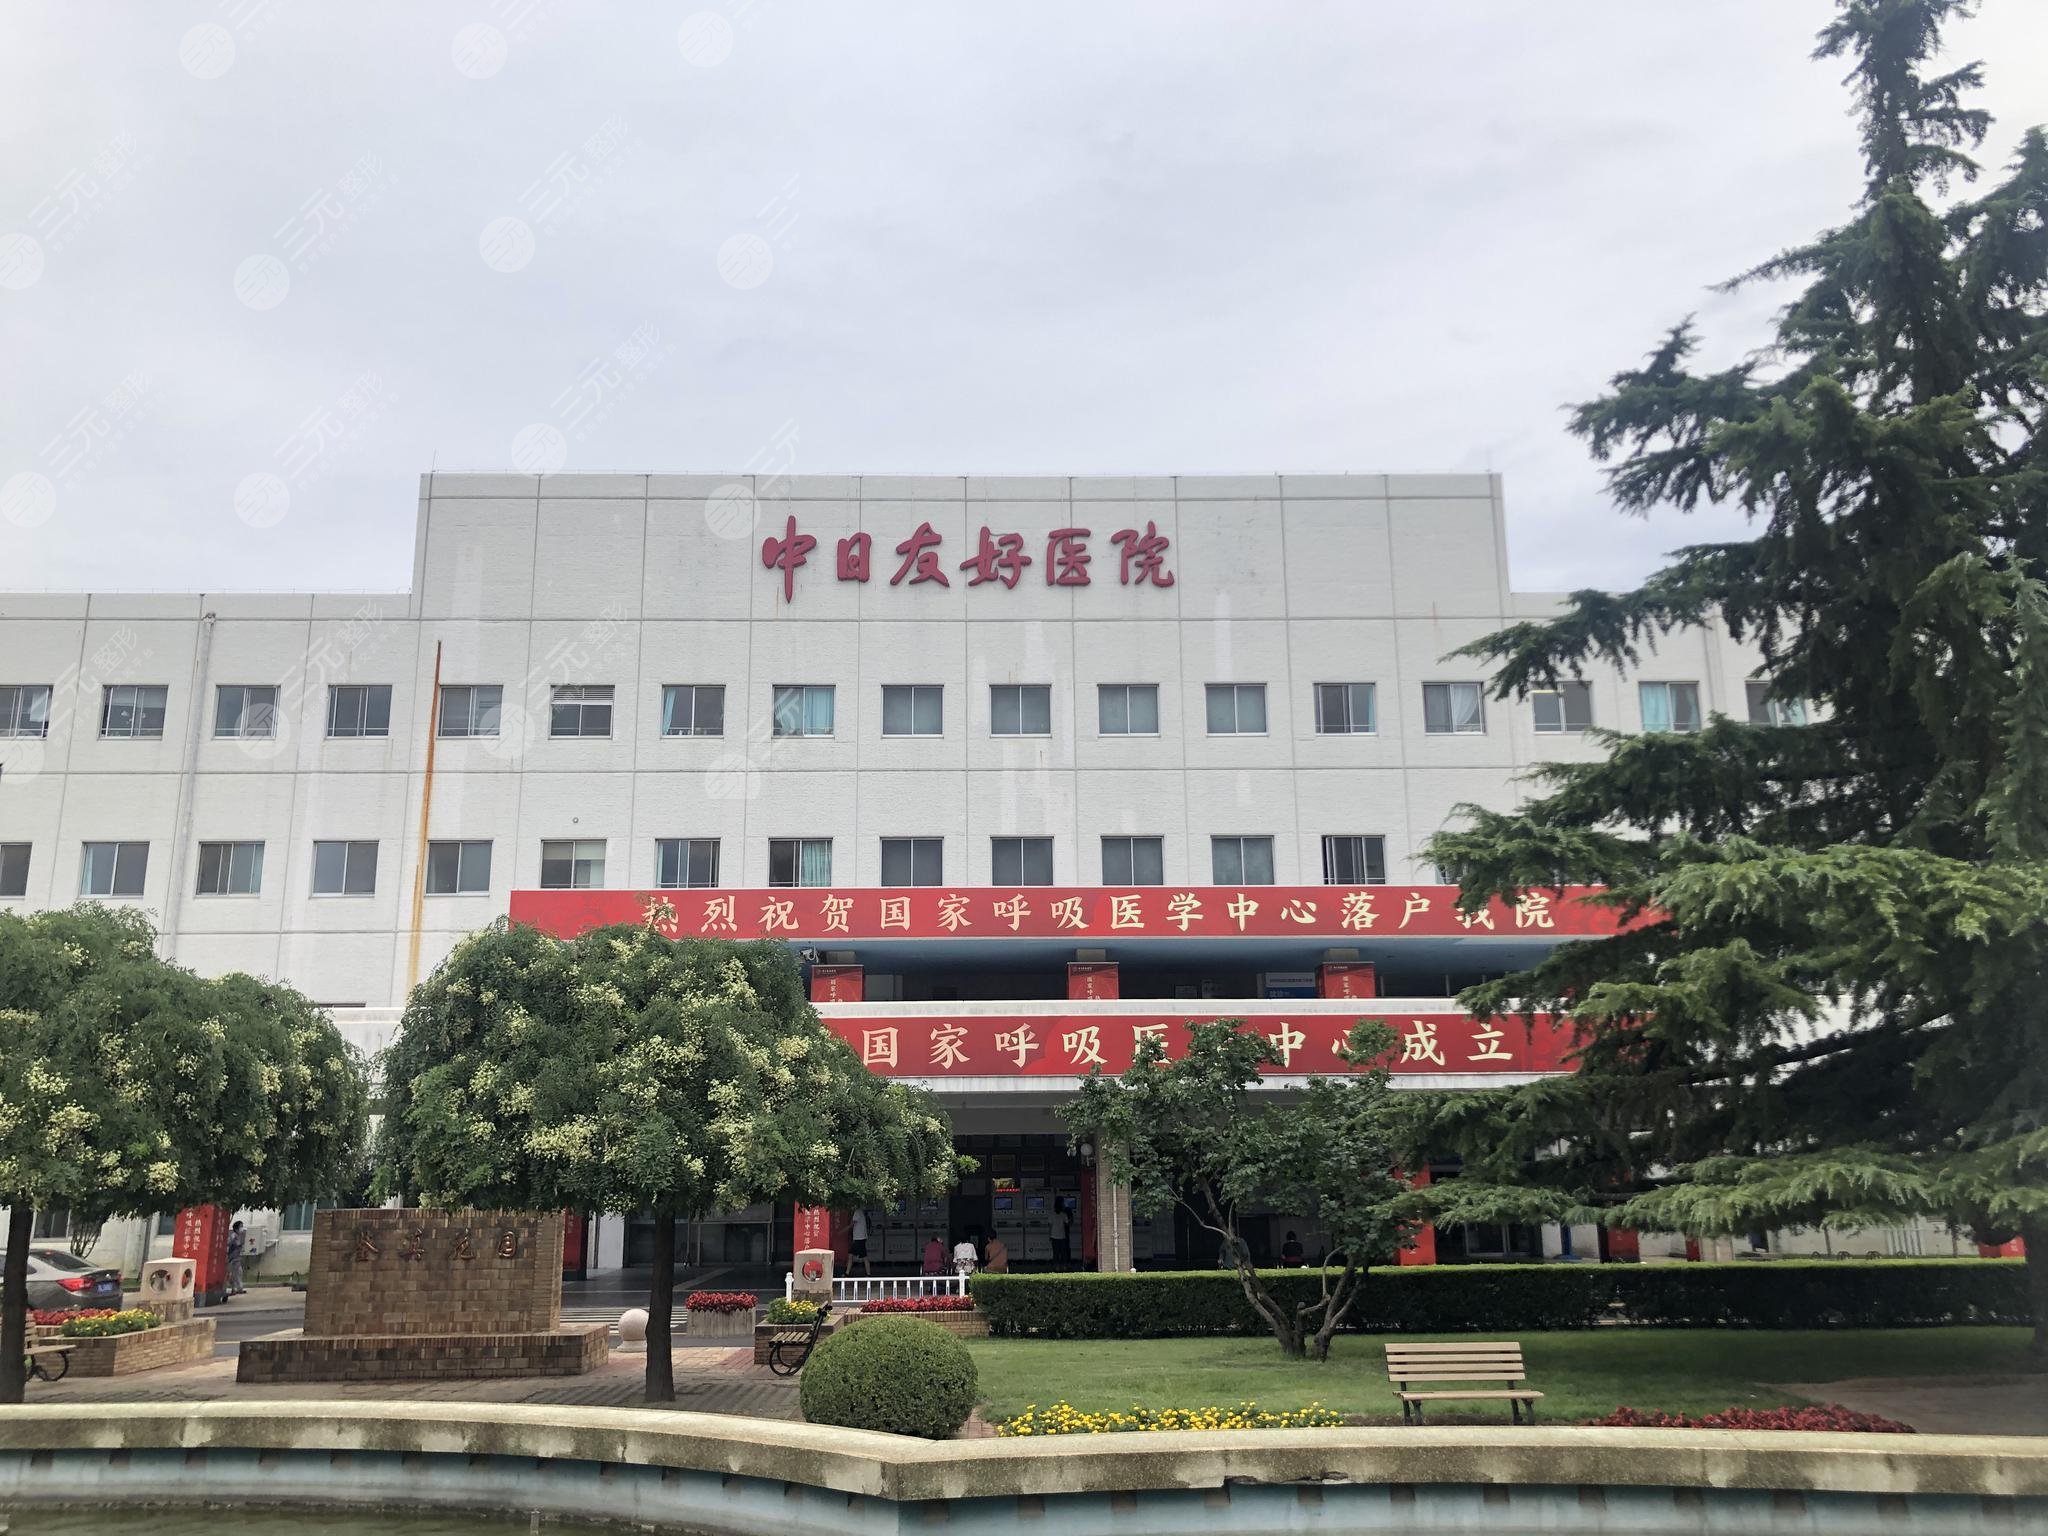 2022北京磨骨(下颌角整形)医院:八大处、协和、中日等